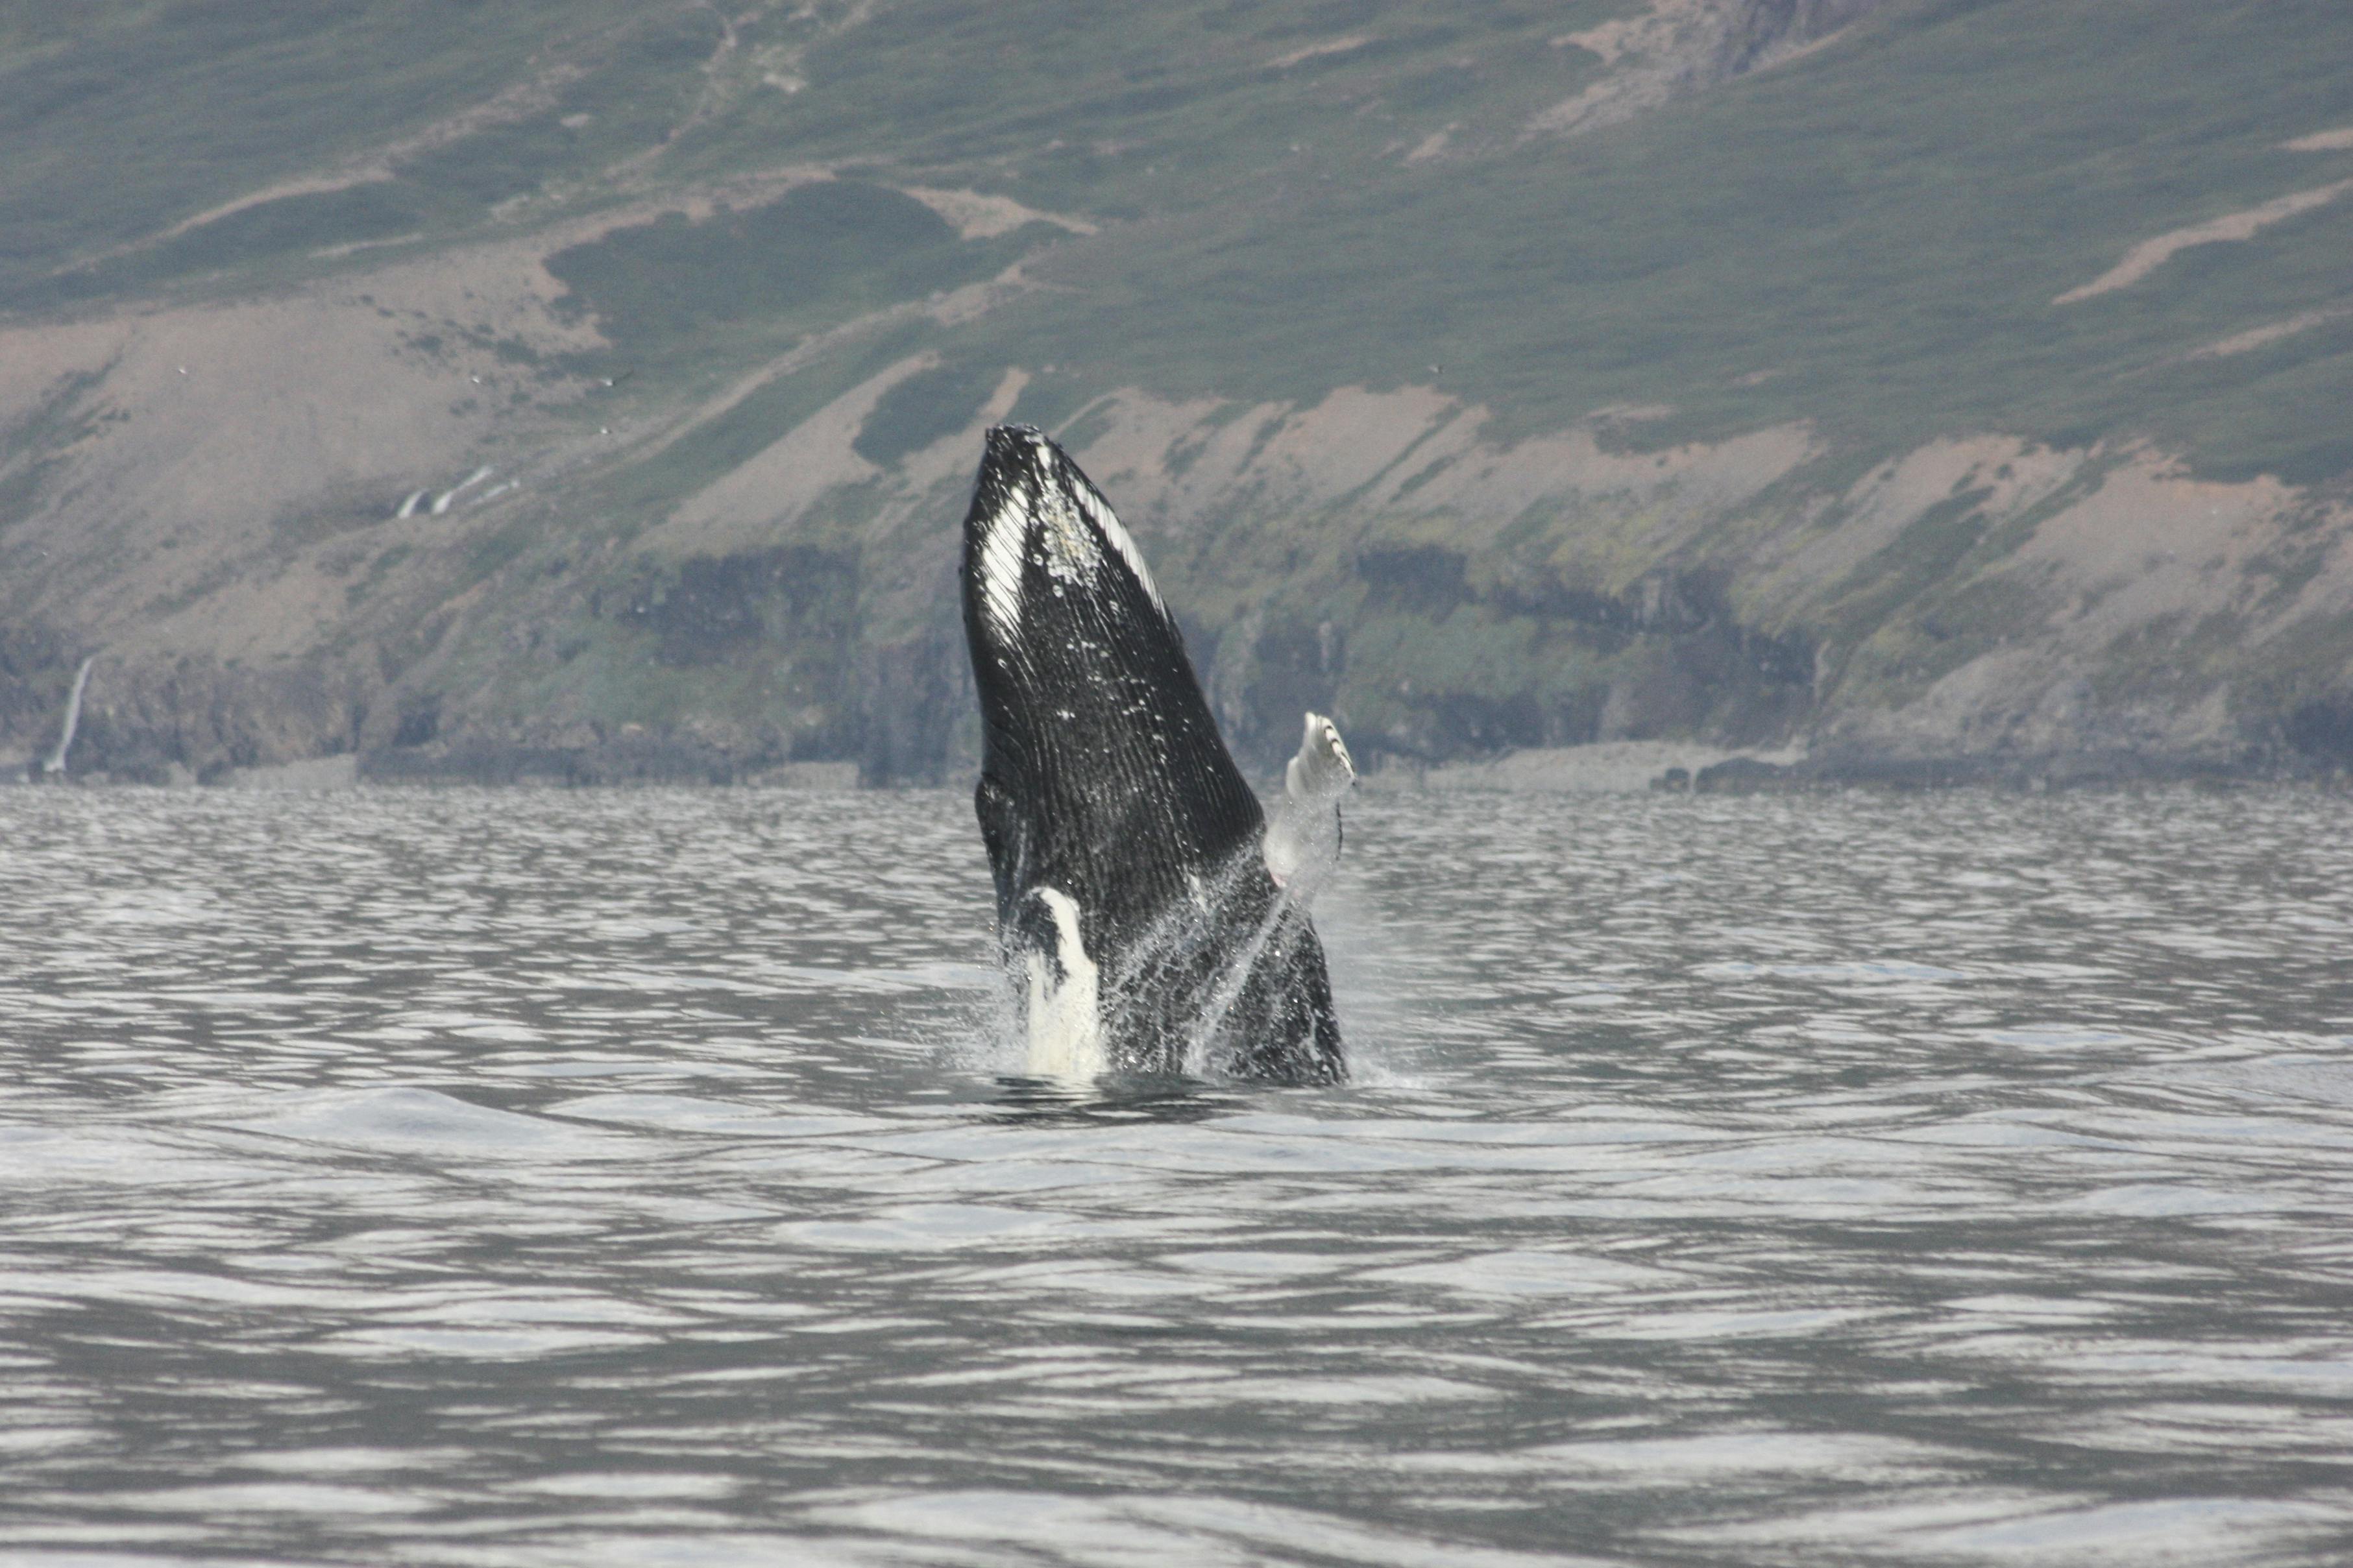 Excursión turística de 2 horas a las ballenas, el fiordo Eyjaf y Akureyri